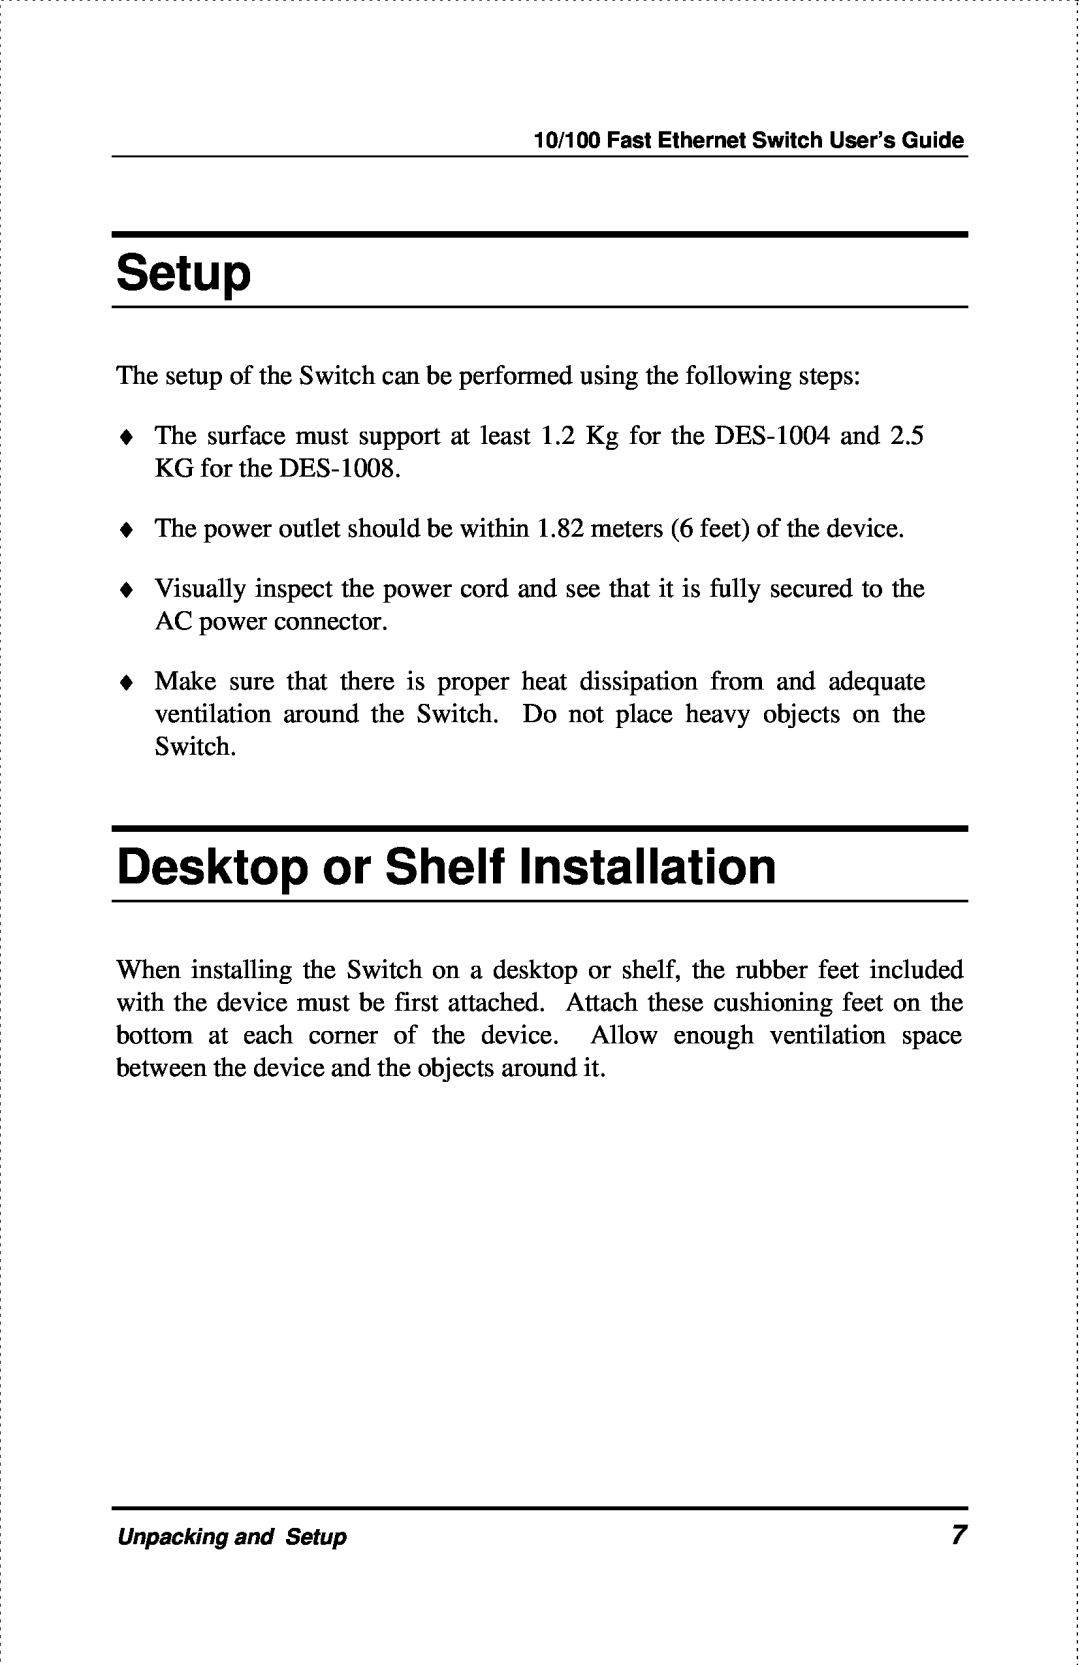 D-Link DES-1004 manual Setup, Desktop or Shelf Installation 